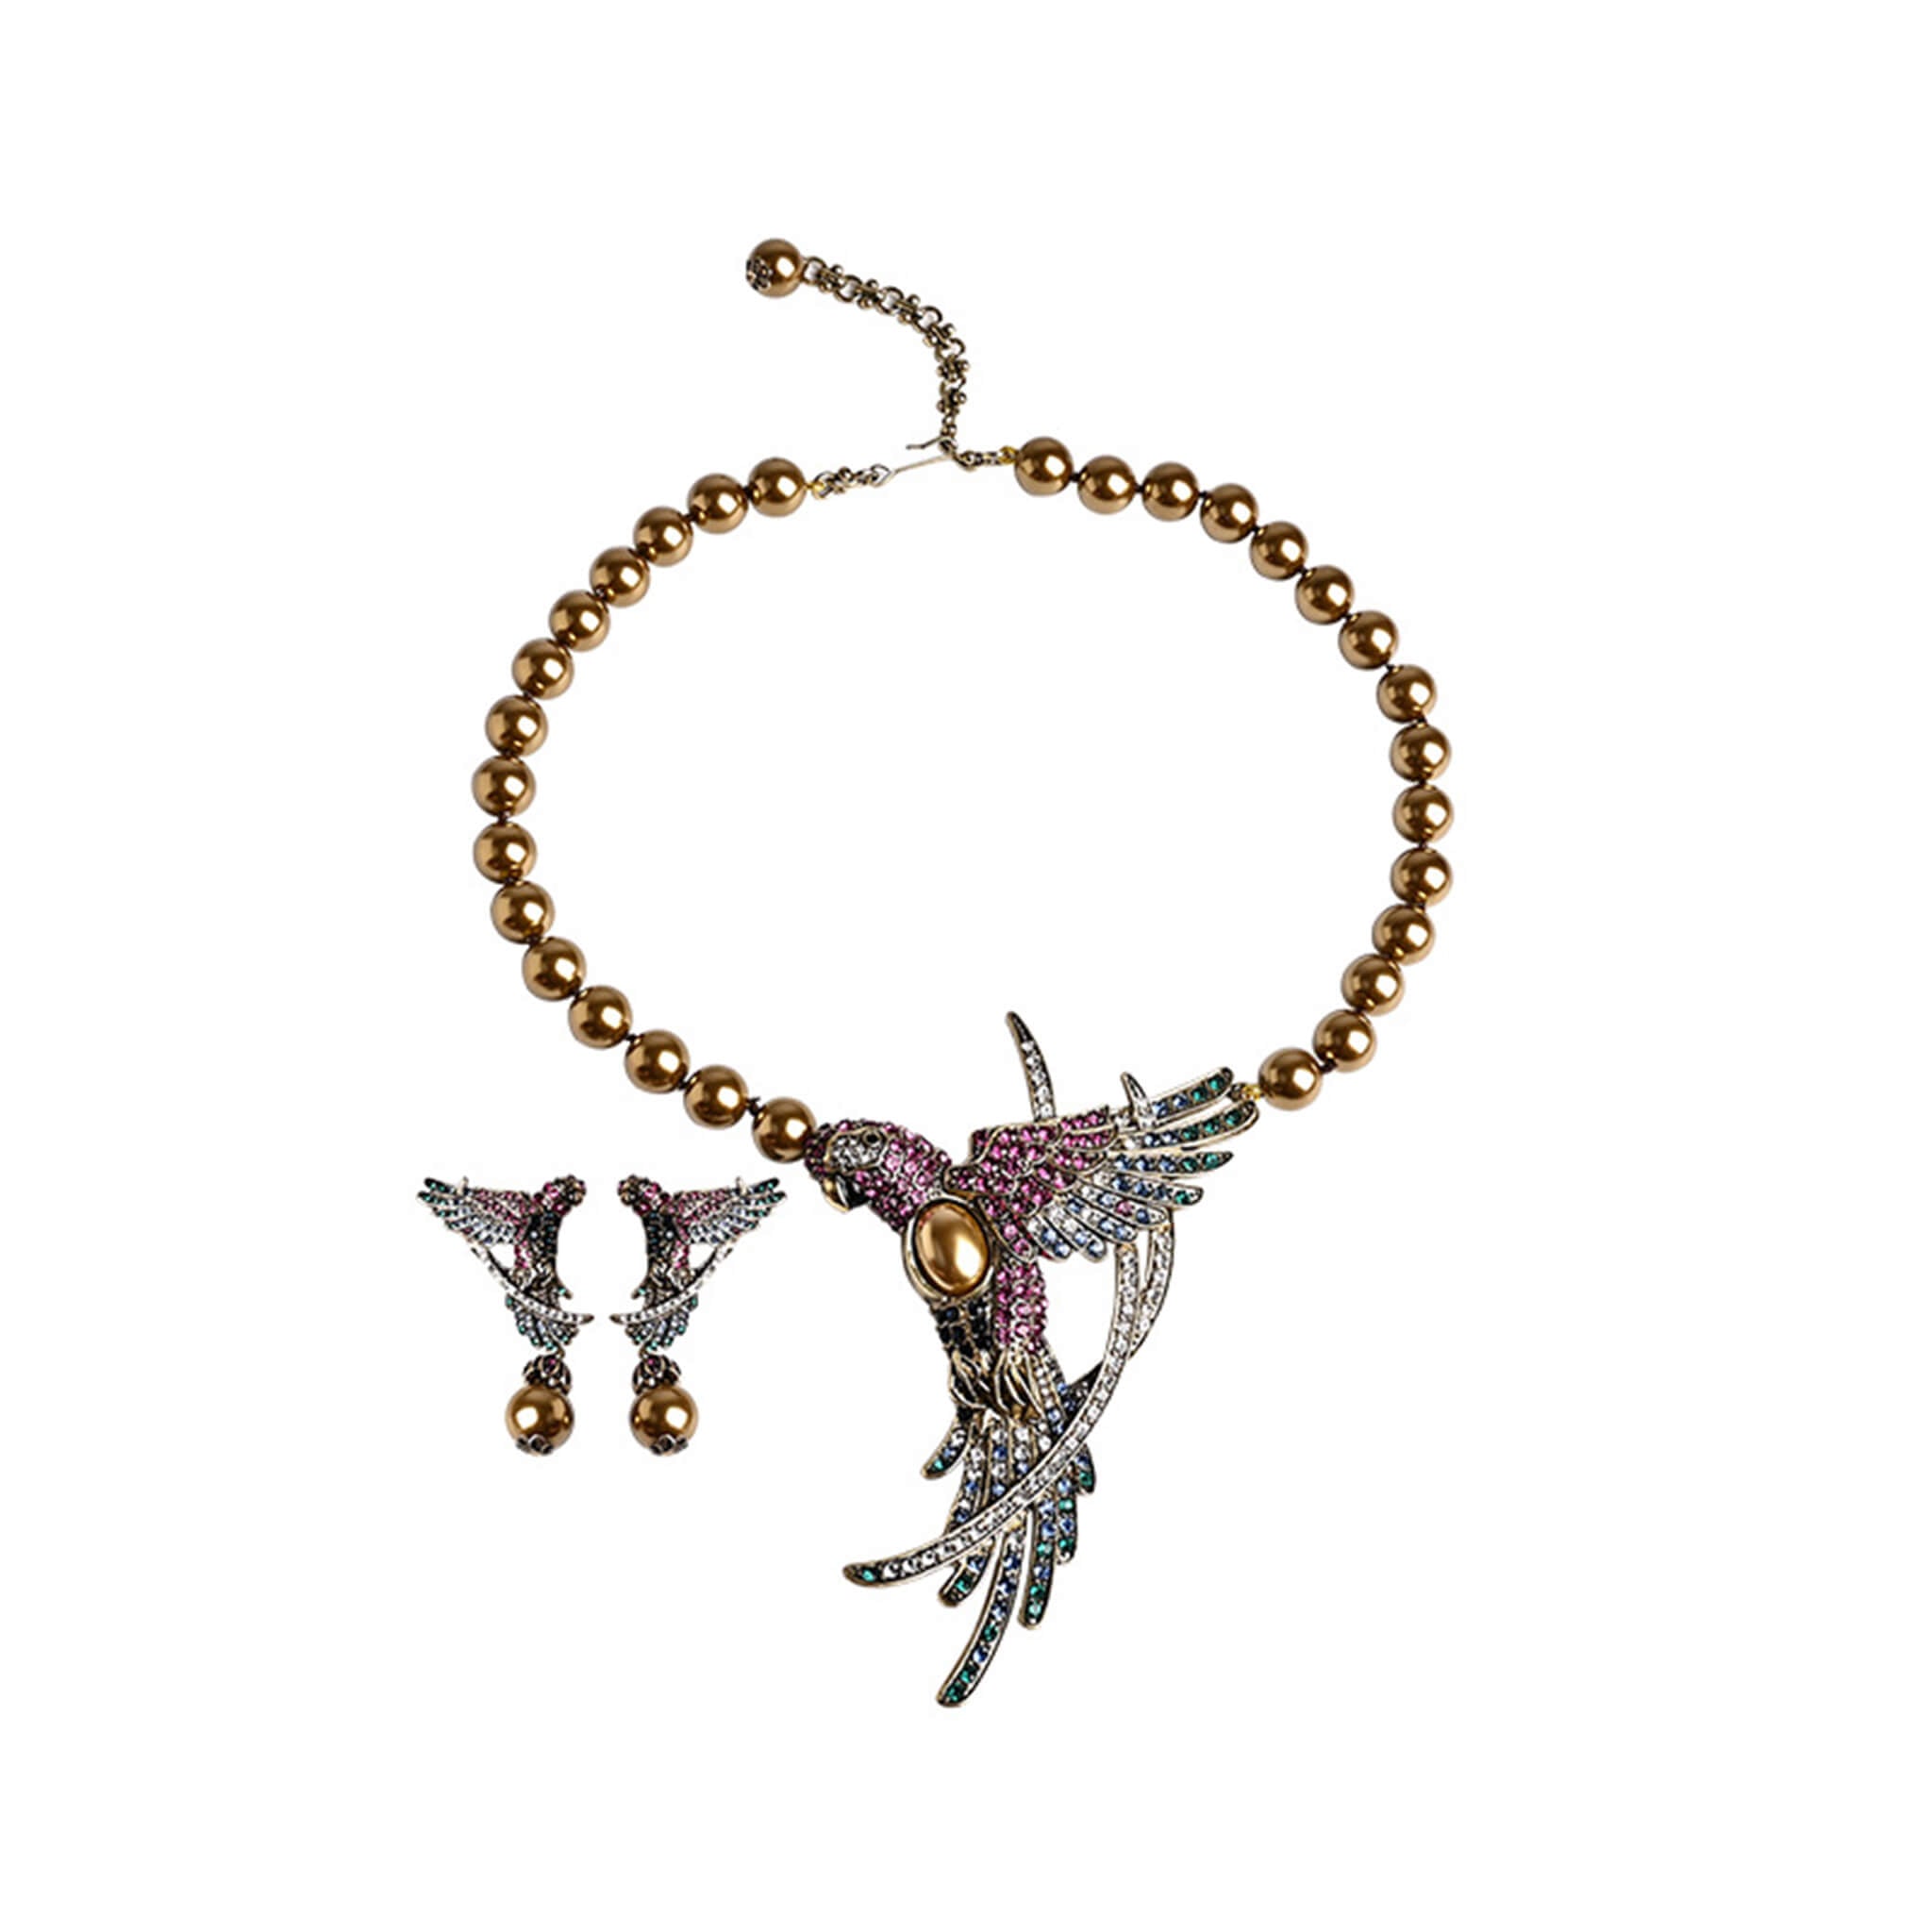 Vintage Court Style Parrot Shape Earrings Necklace Set  UponBasics 2PCS-SET Golden 